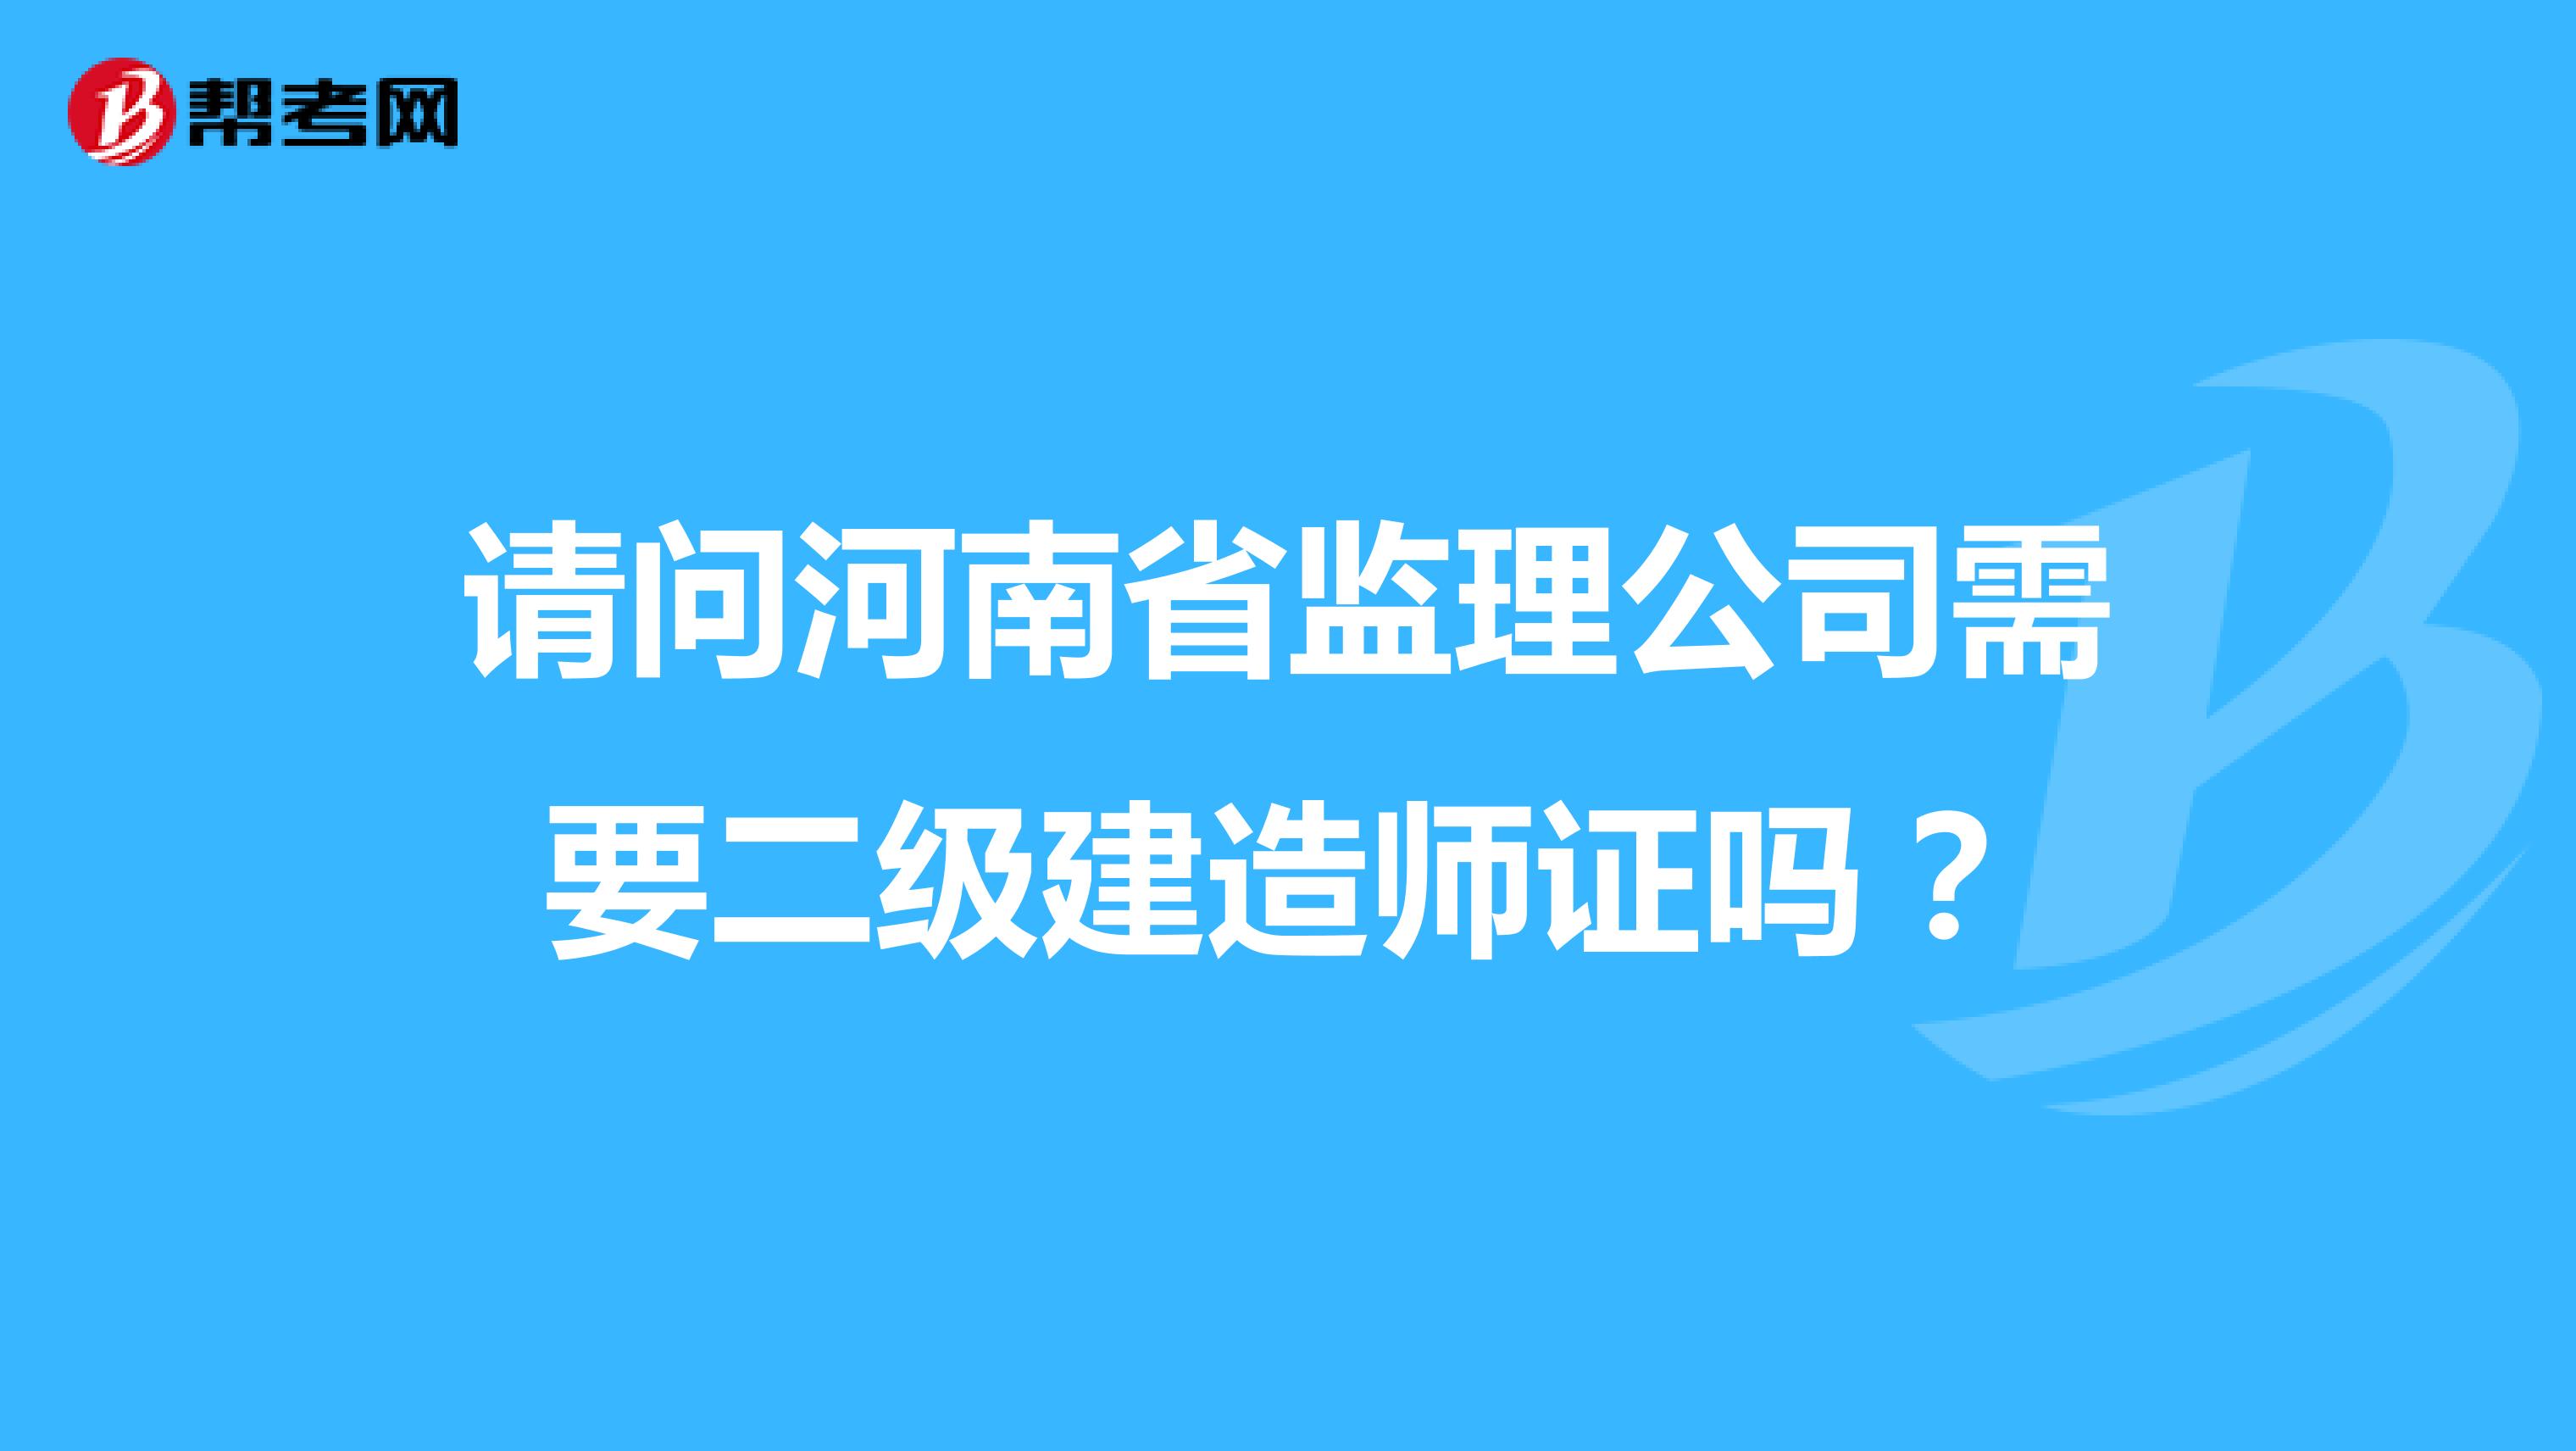 请问河南省监理公司需要二级建造师证吗？